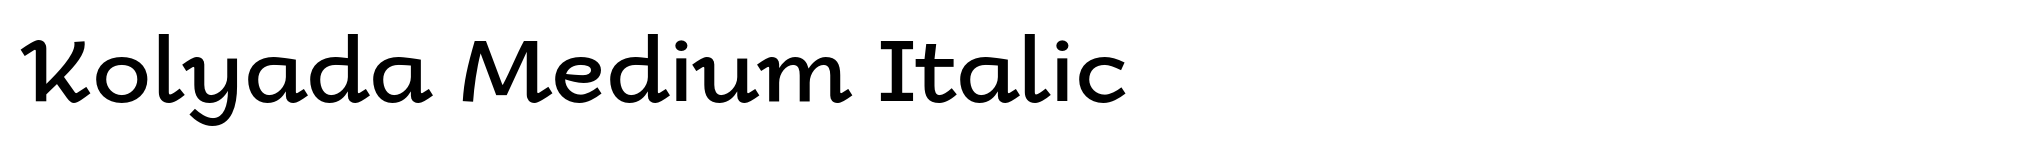 Kolyada Medium Italic image